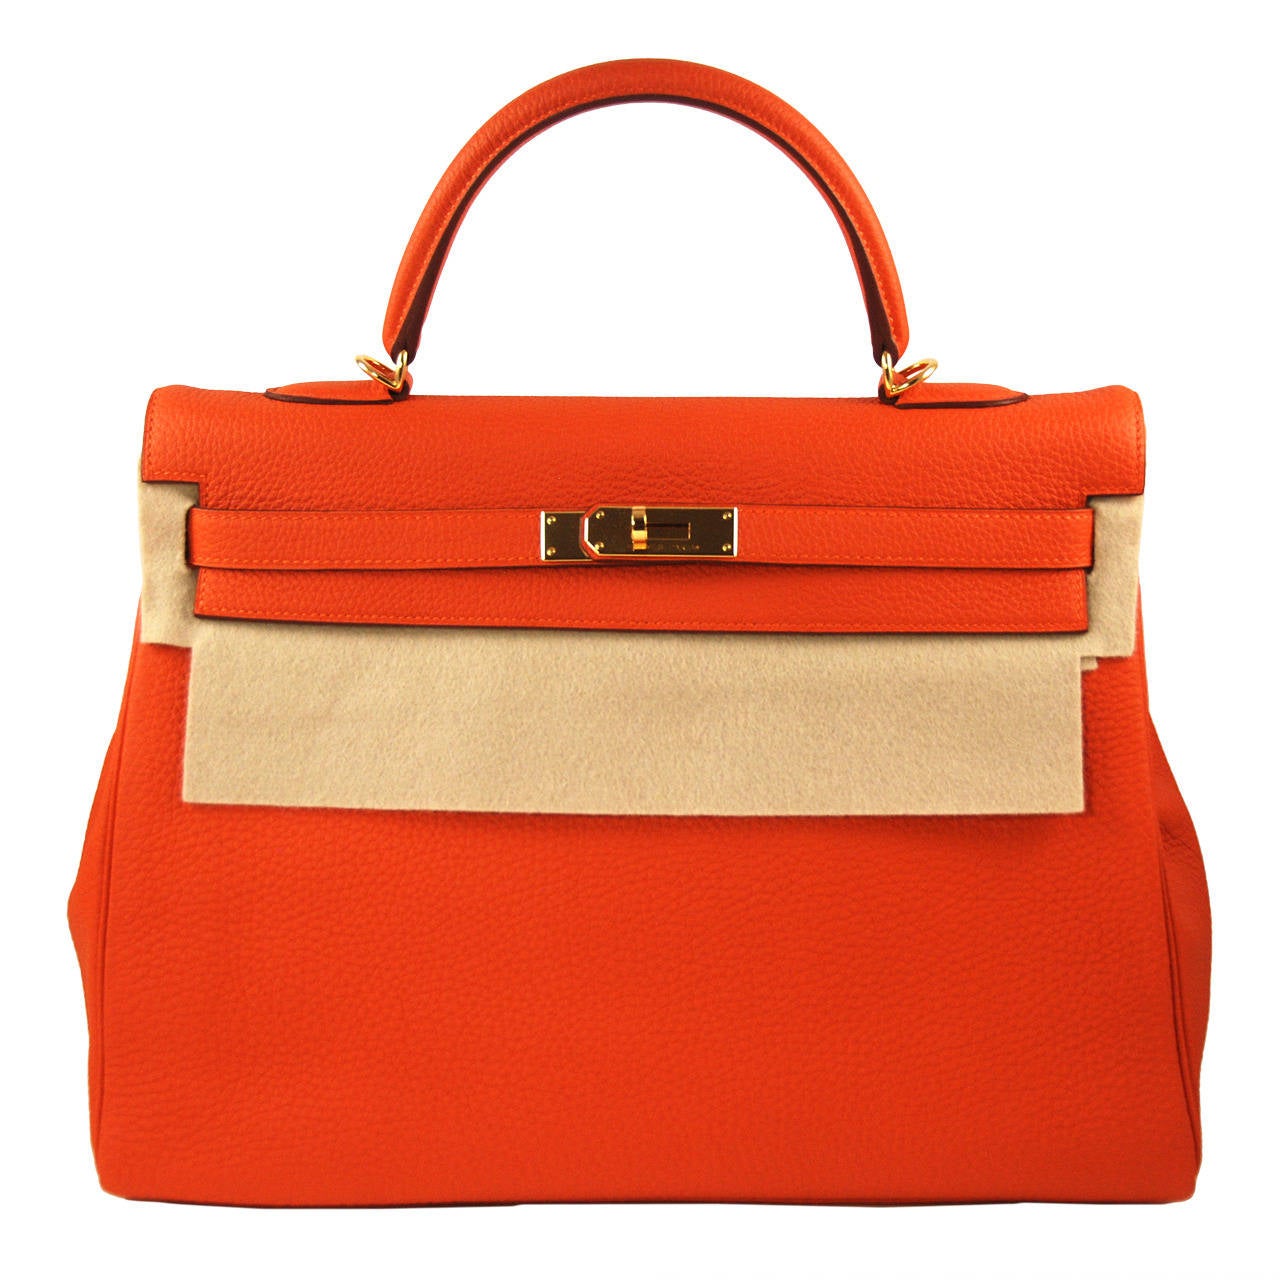 2014 Hermes 35 cm Orange Togo Leather Kelly Bag with Gold Hardware at ...